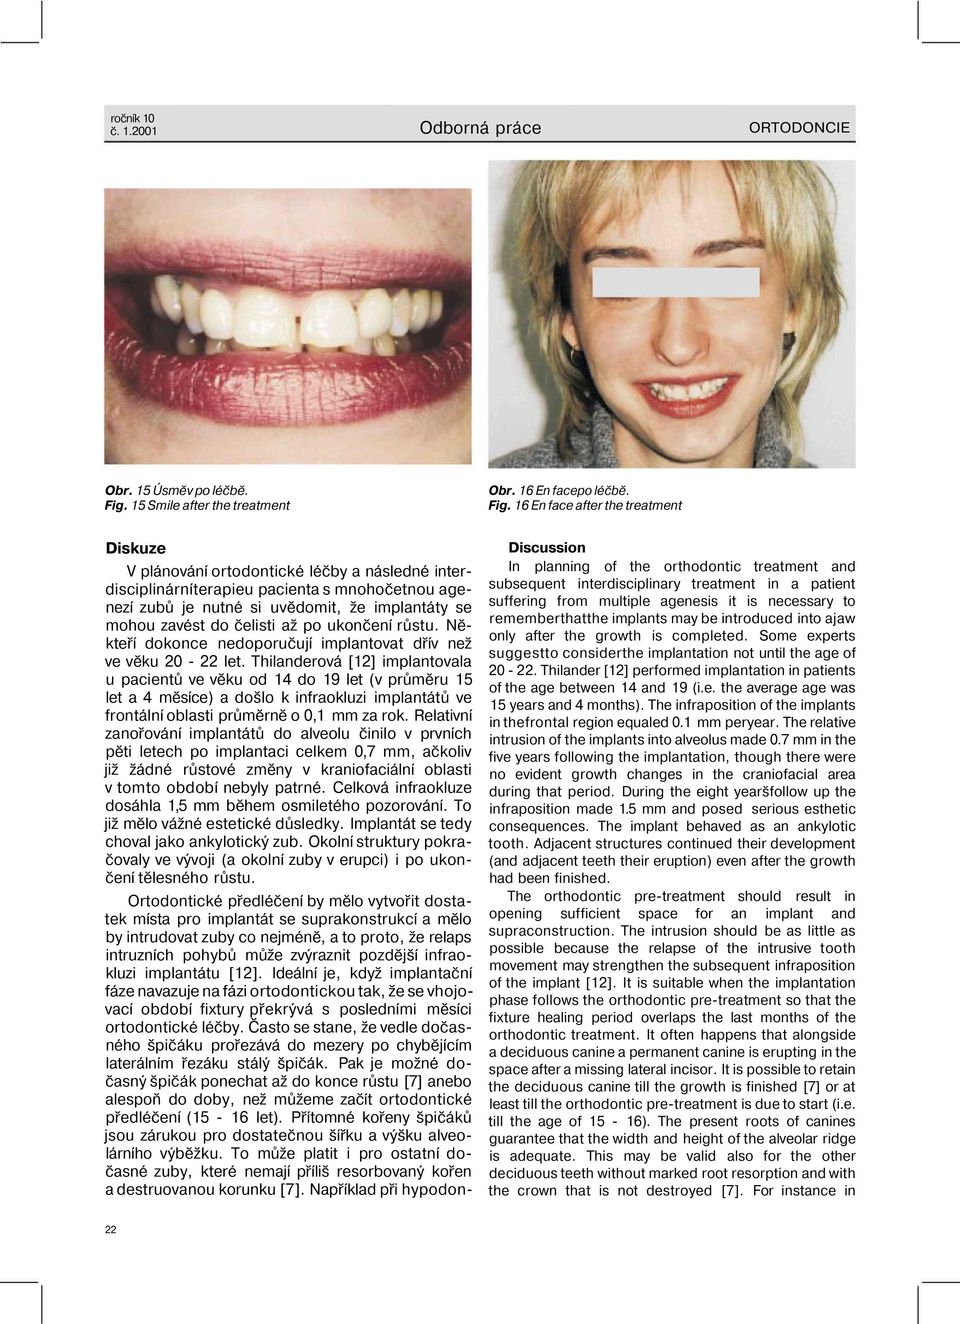 16 En face after the treatment Diskuze V plánování ortodontické léčby a následné interdisciplinárníterapieu pacienta s mnohočetnou agenezí zubů je nutné si uvědomit, že implantáty se mohou zavést do